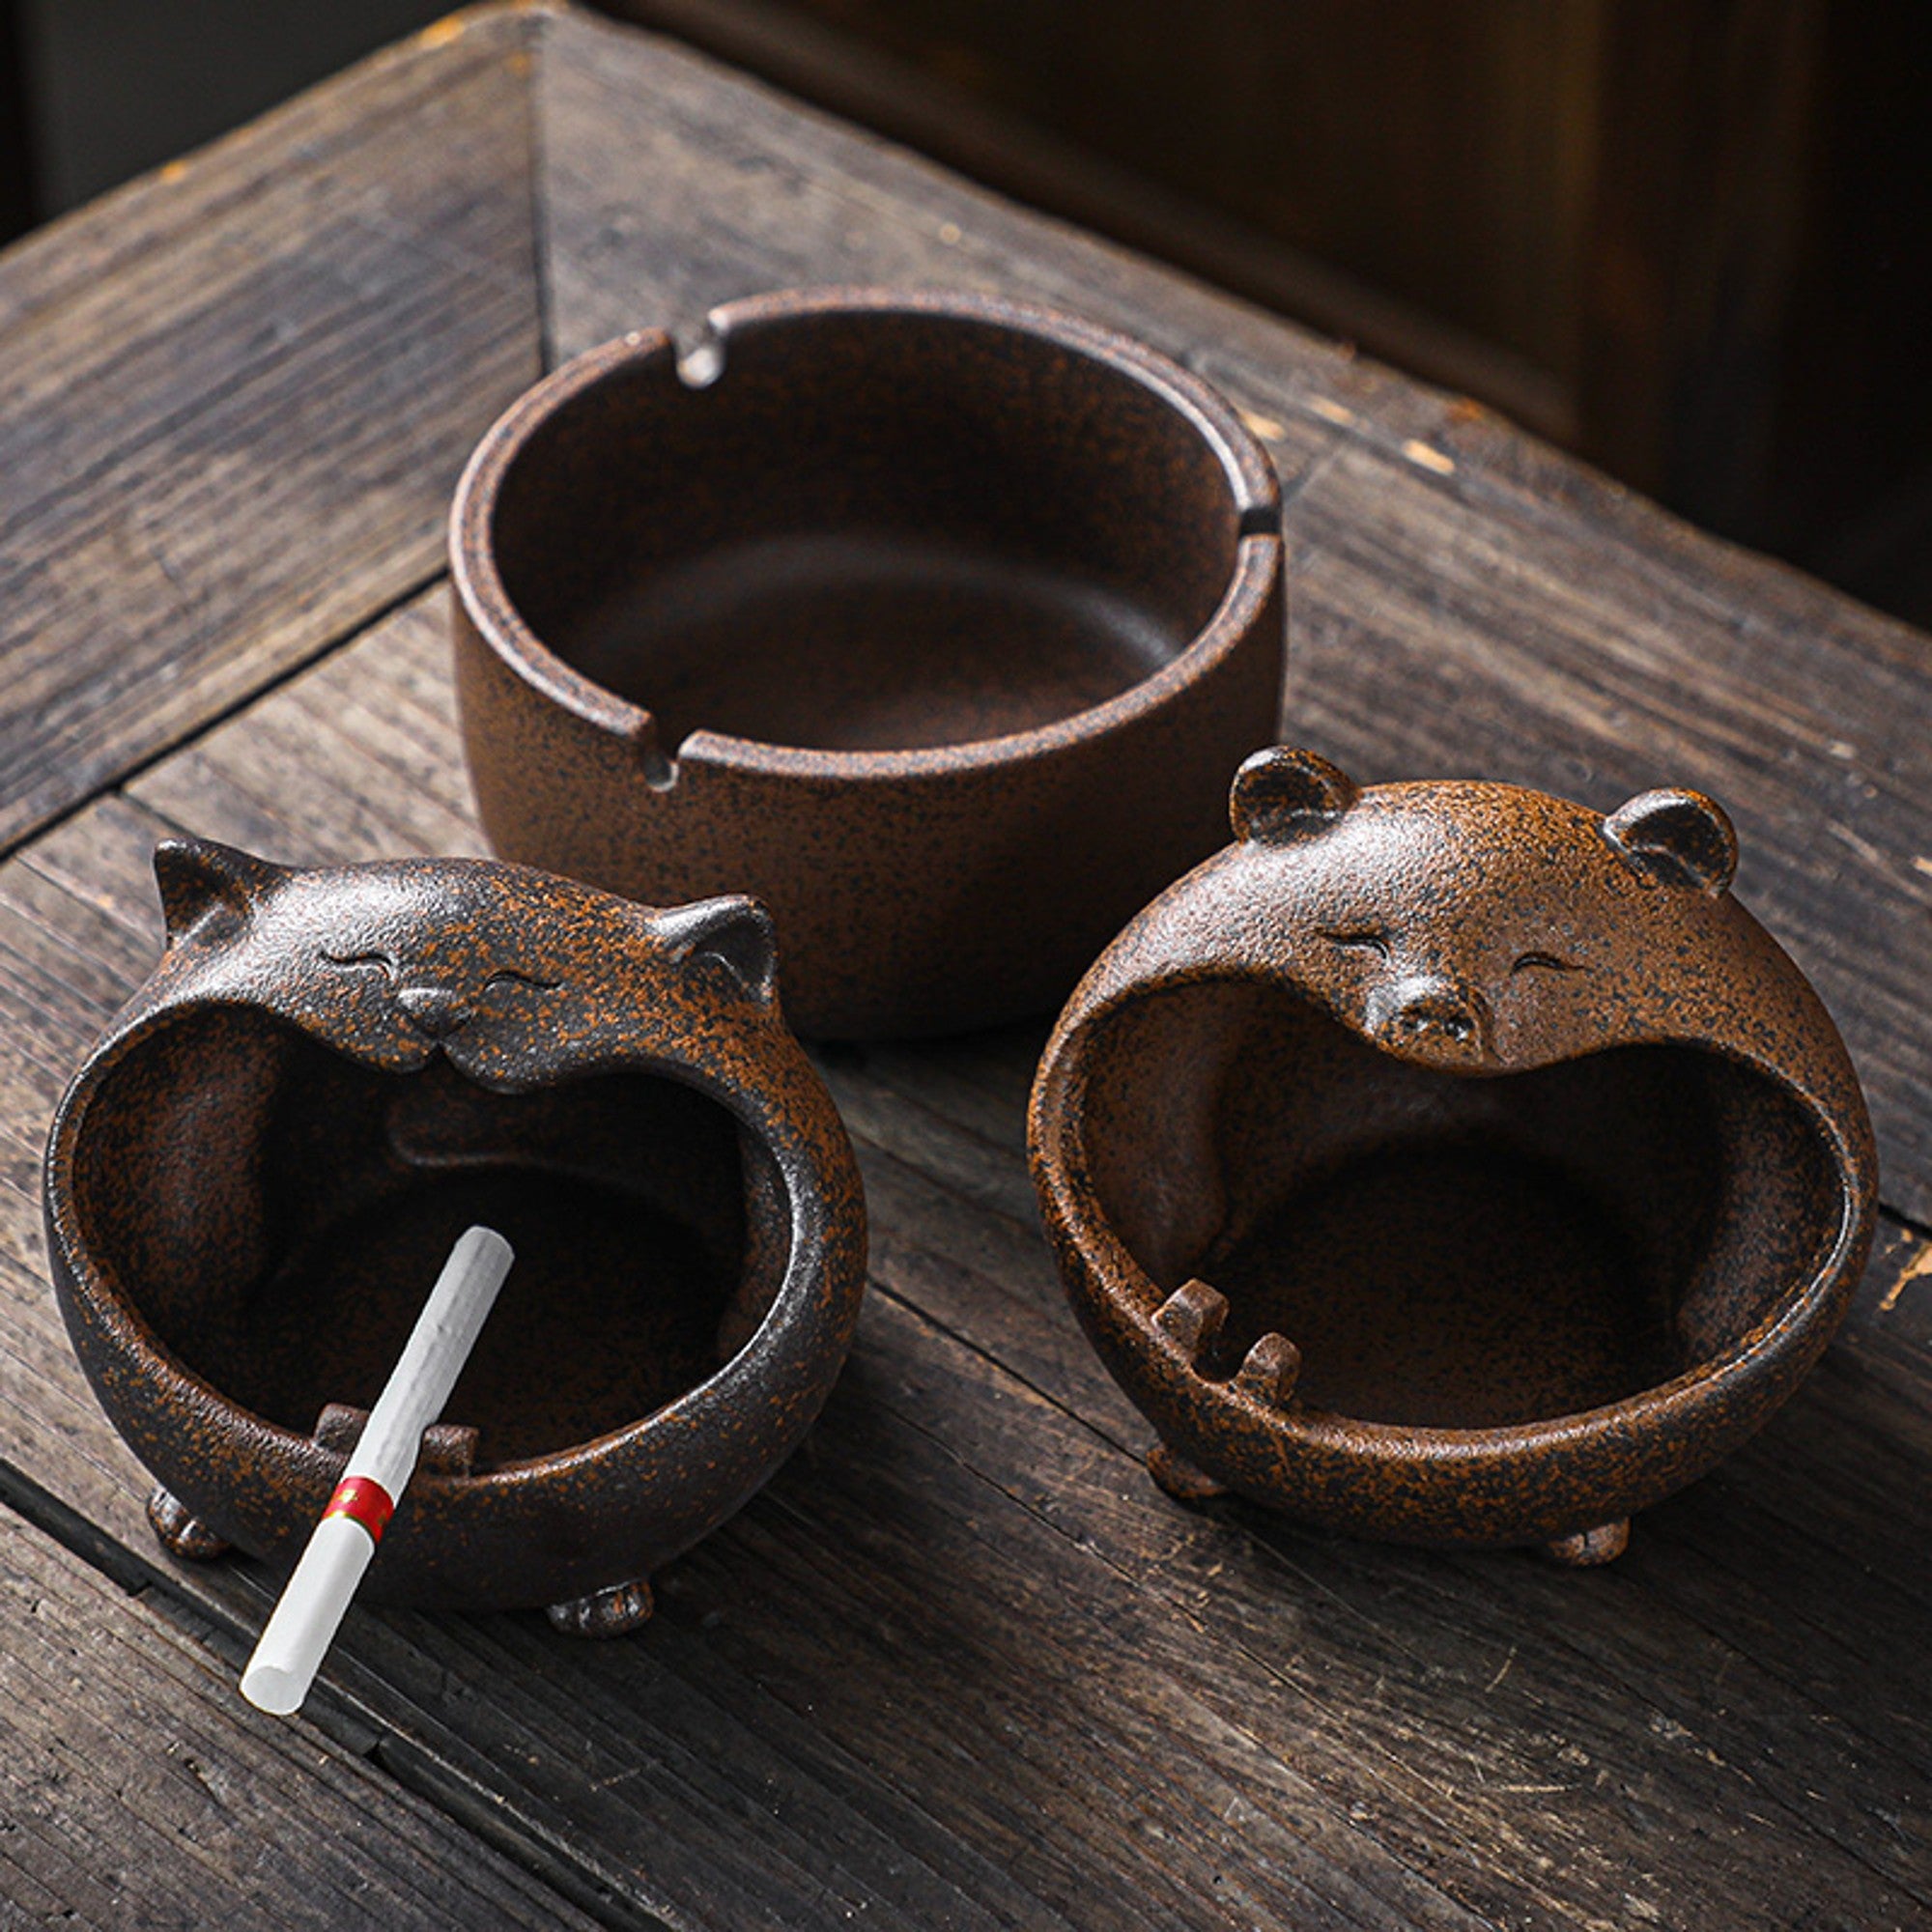  Cigar ashtray, Ceramic ashtray, Pottery ashtray, Red